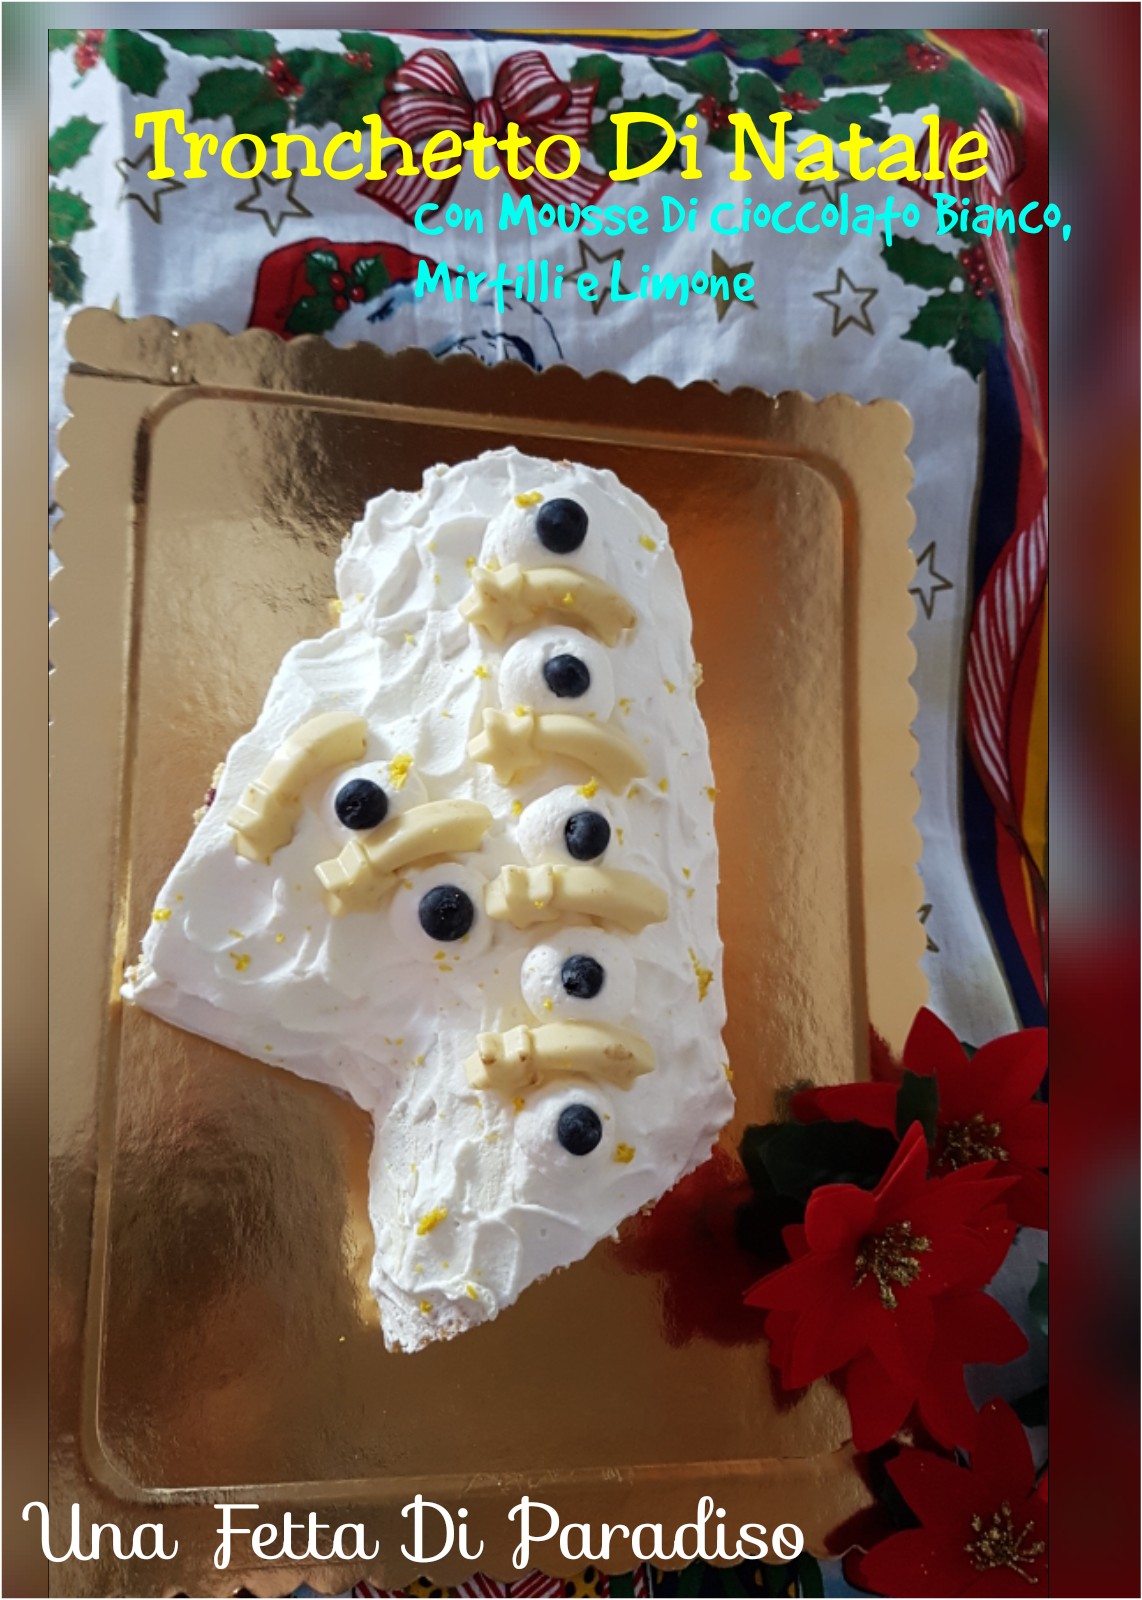 Tronchetto Di Natale Cioccolato Bianco.Una Fetta Di Paradiso Tronchetto Di Natale Con Mousse Di Cioccolato Bianco Mirtilli E Limone